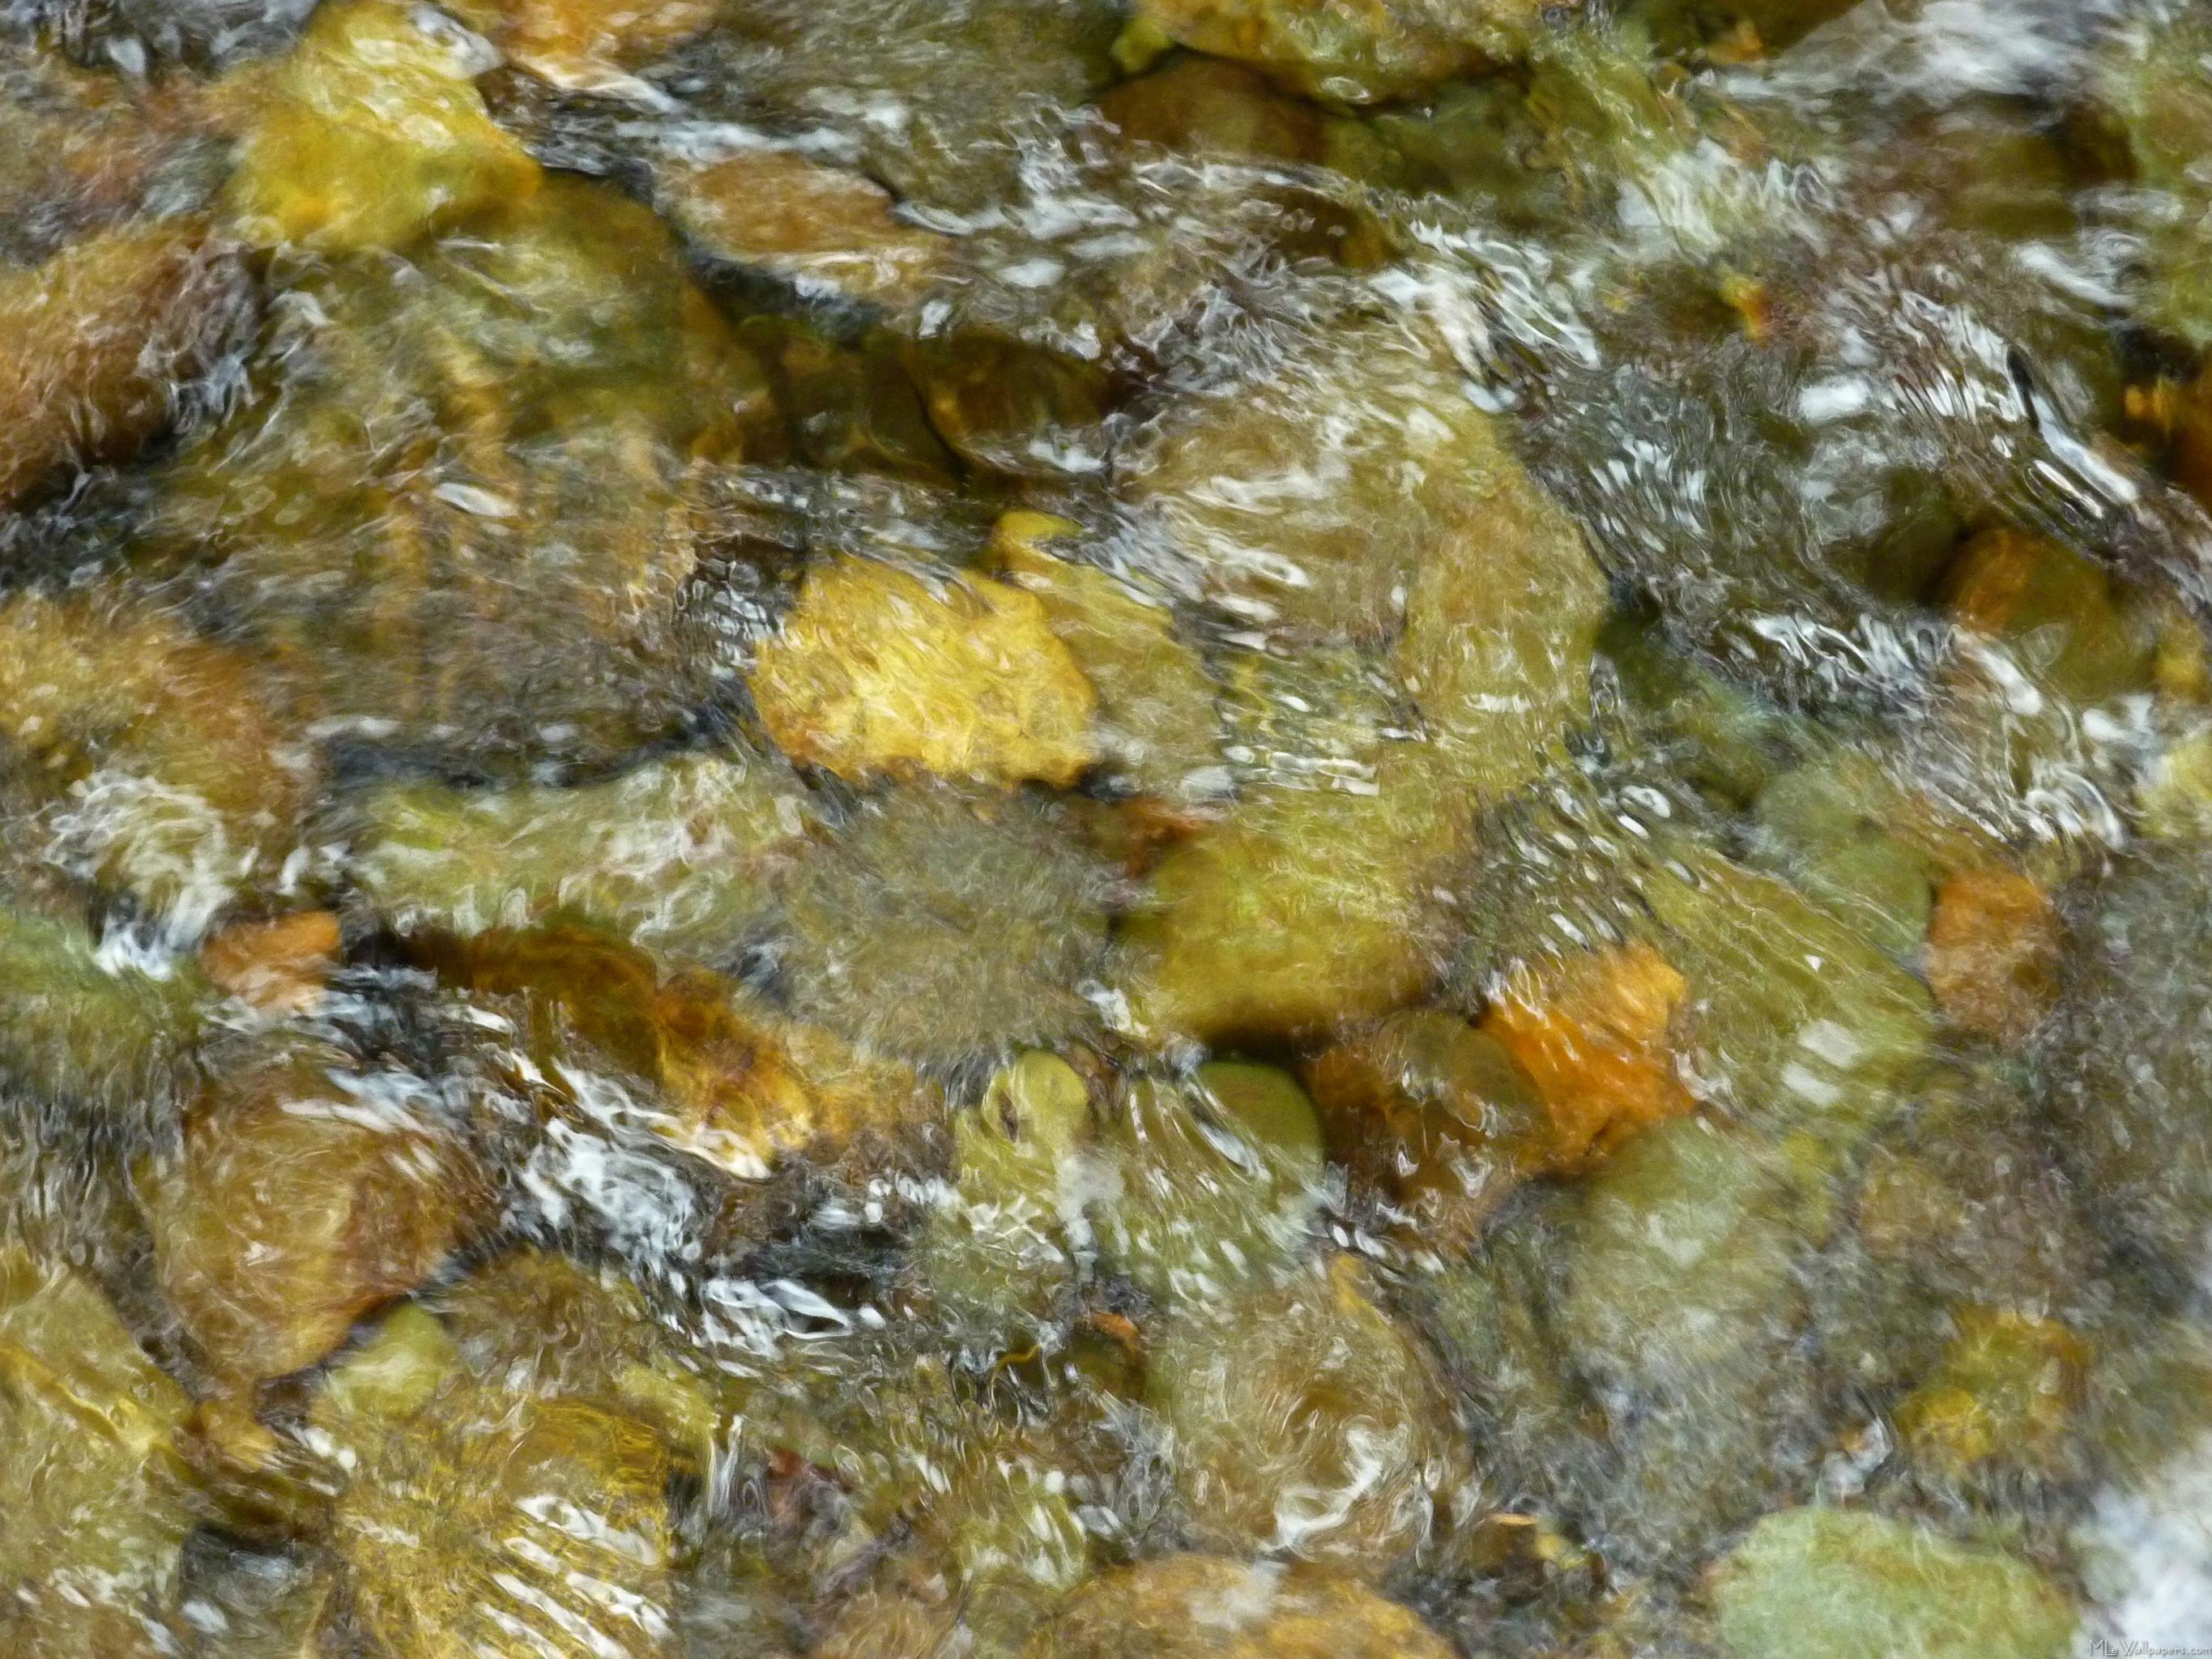 Pebbles In Home Creek - Water Running Over Stones - HD Wallpaper 